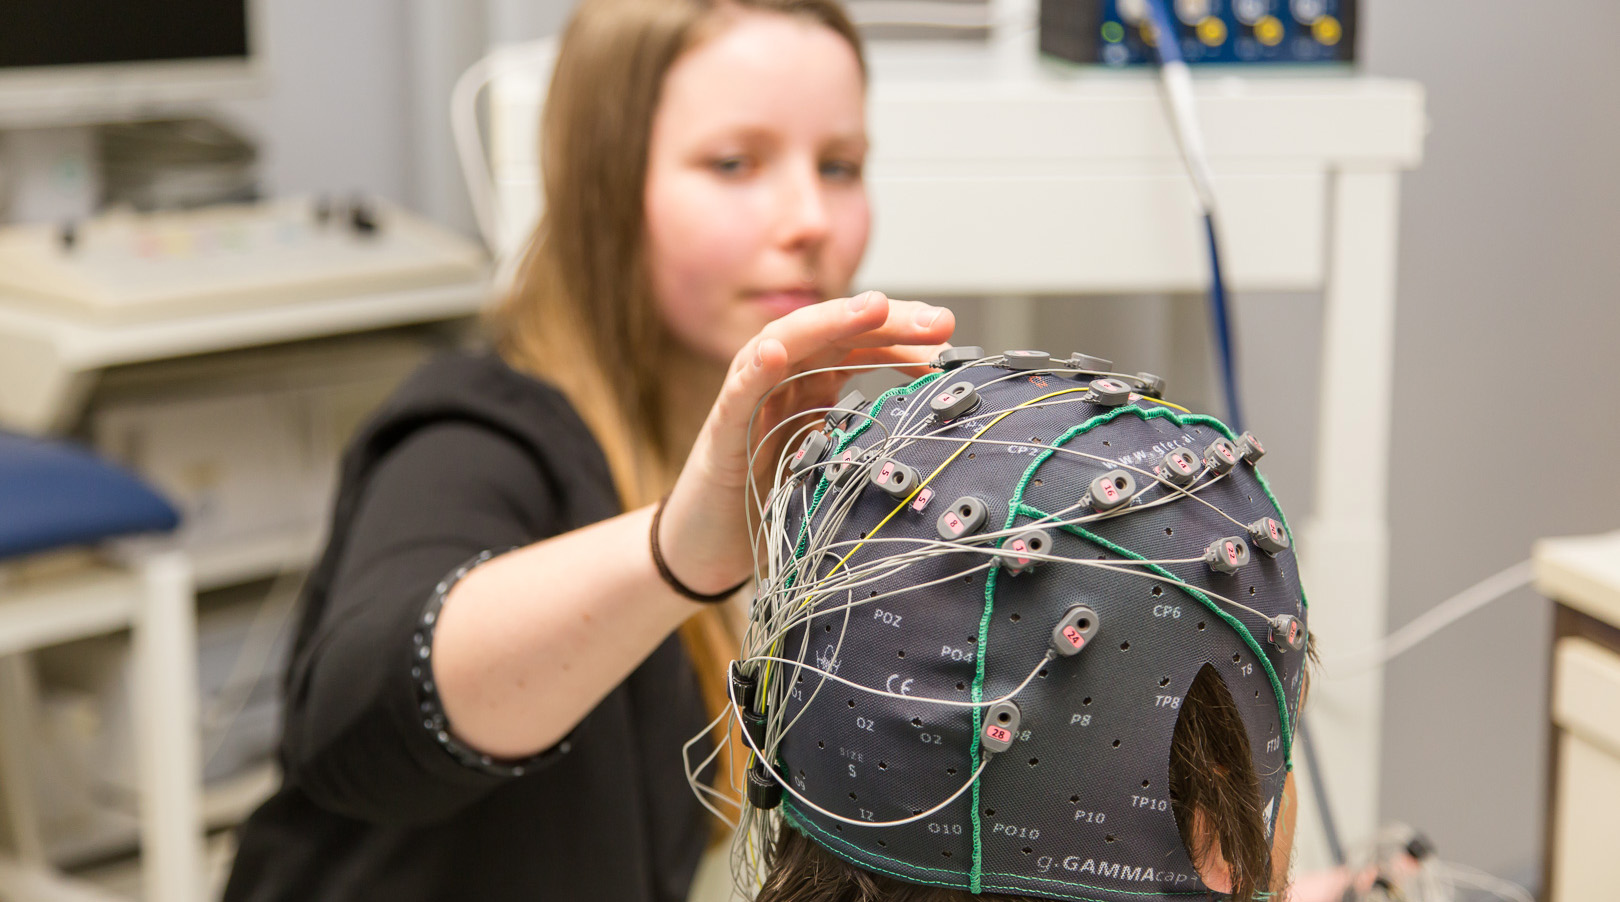 Foto: Zwei Studierende in einem Forschungslabor. Diese führen Untersuchungen mit einer Elektroenzephalografie durch. Einer der Studierenden stellt den Probanden dar.